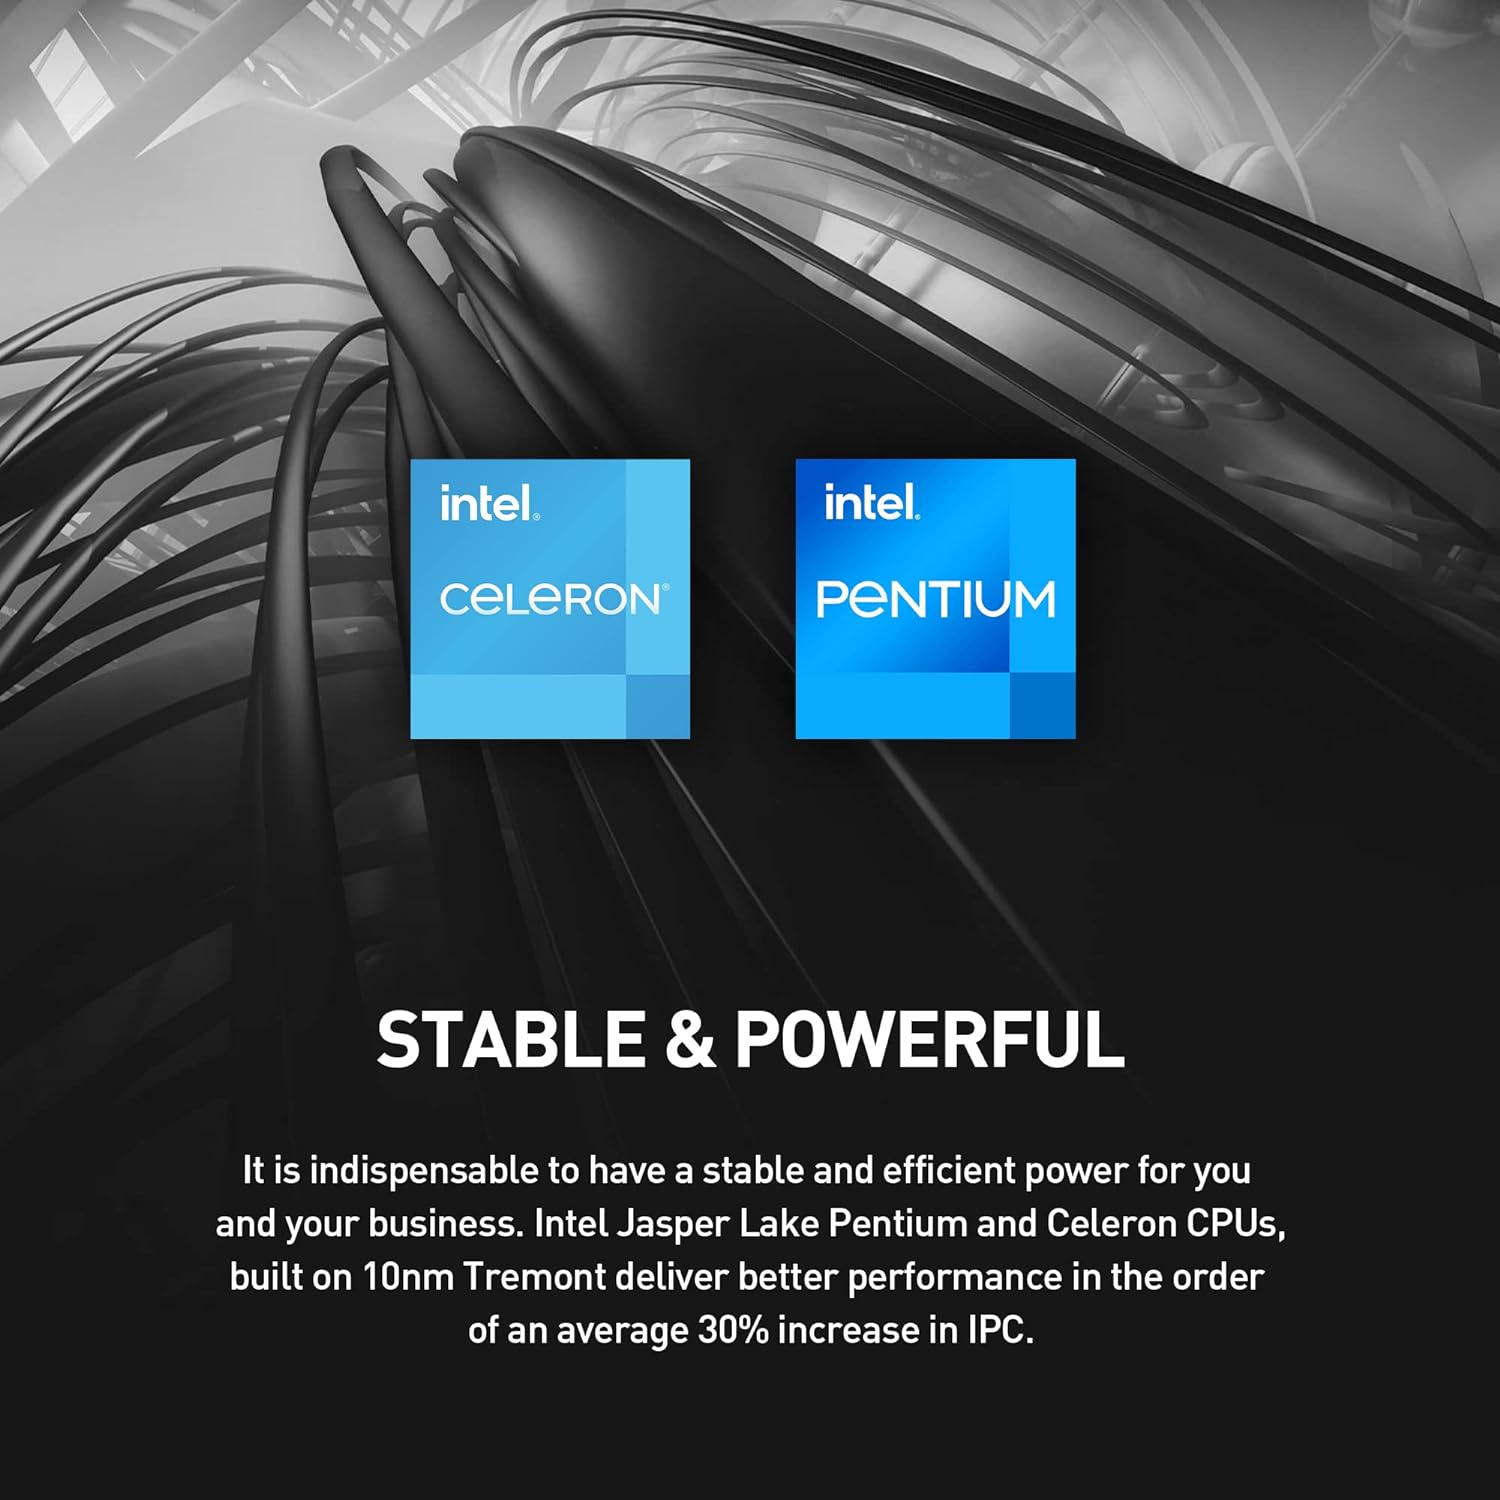 MSI Cubi N ADL Mini PC: Intel Celeron N100, Wi-Fi, Thunderbolt Type C, Black, Non-OS/Barebone: ADL-020BUS